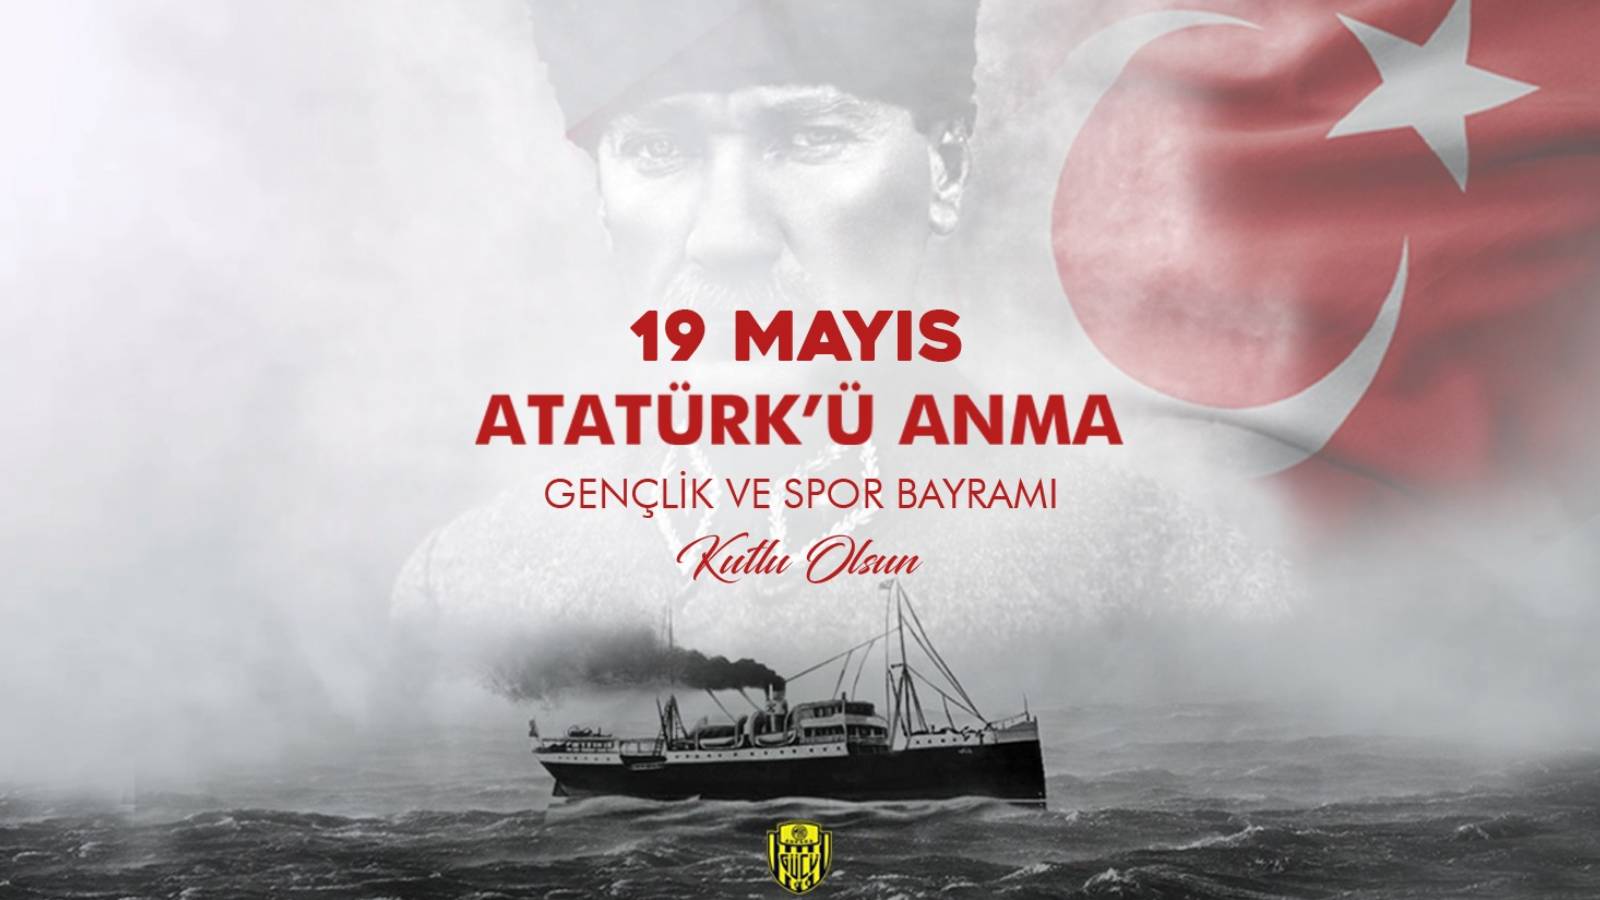 "Dün, bugün ve daima izindeyiz Atam"
                Ünlü İsimlerden 19 Mayıs Atatürk'ü Anma, Gençlik ve Spor Bayramı paylaşımları